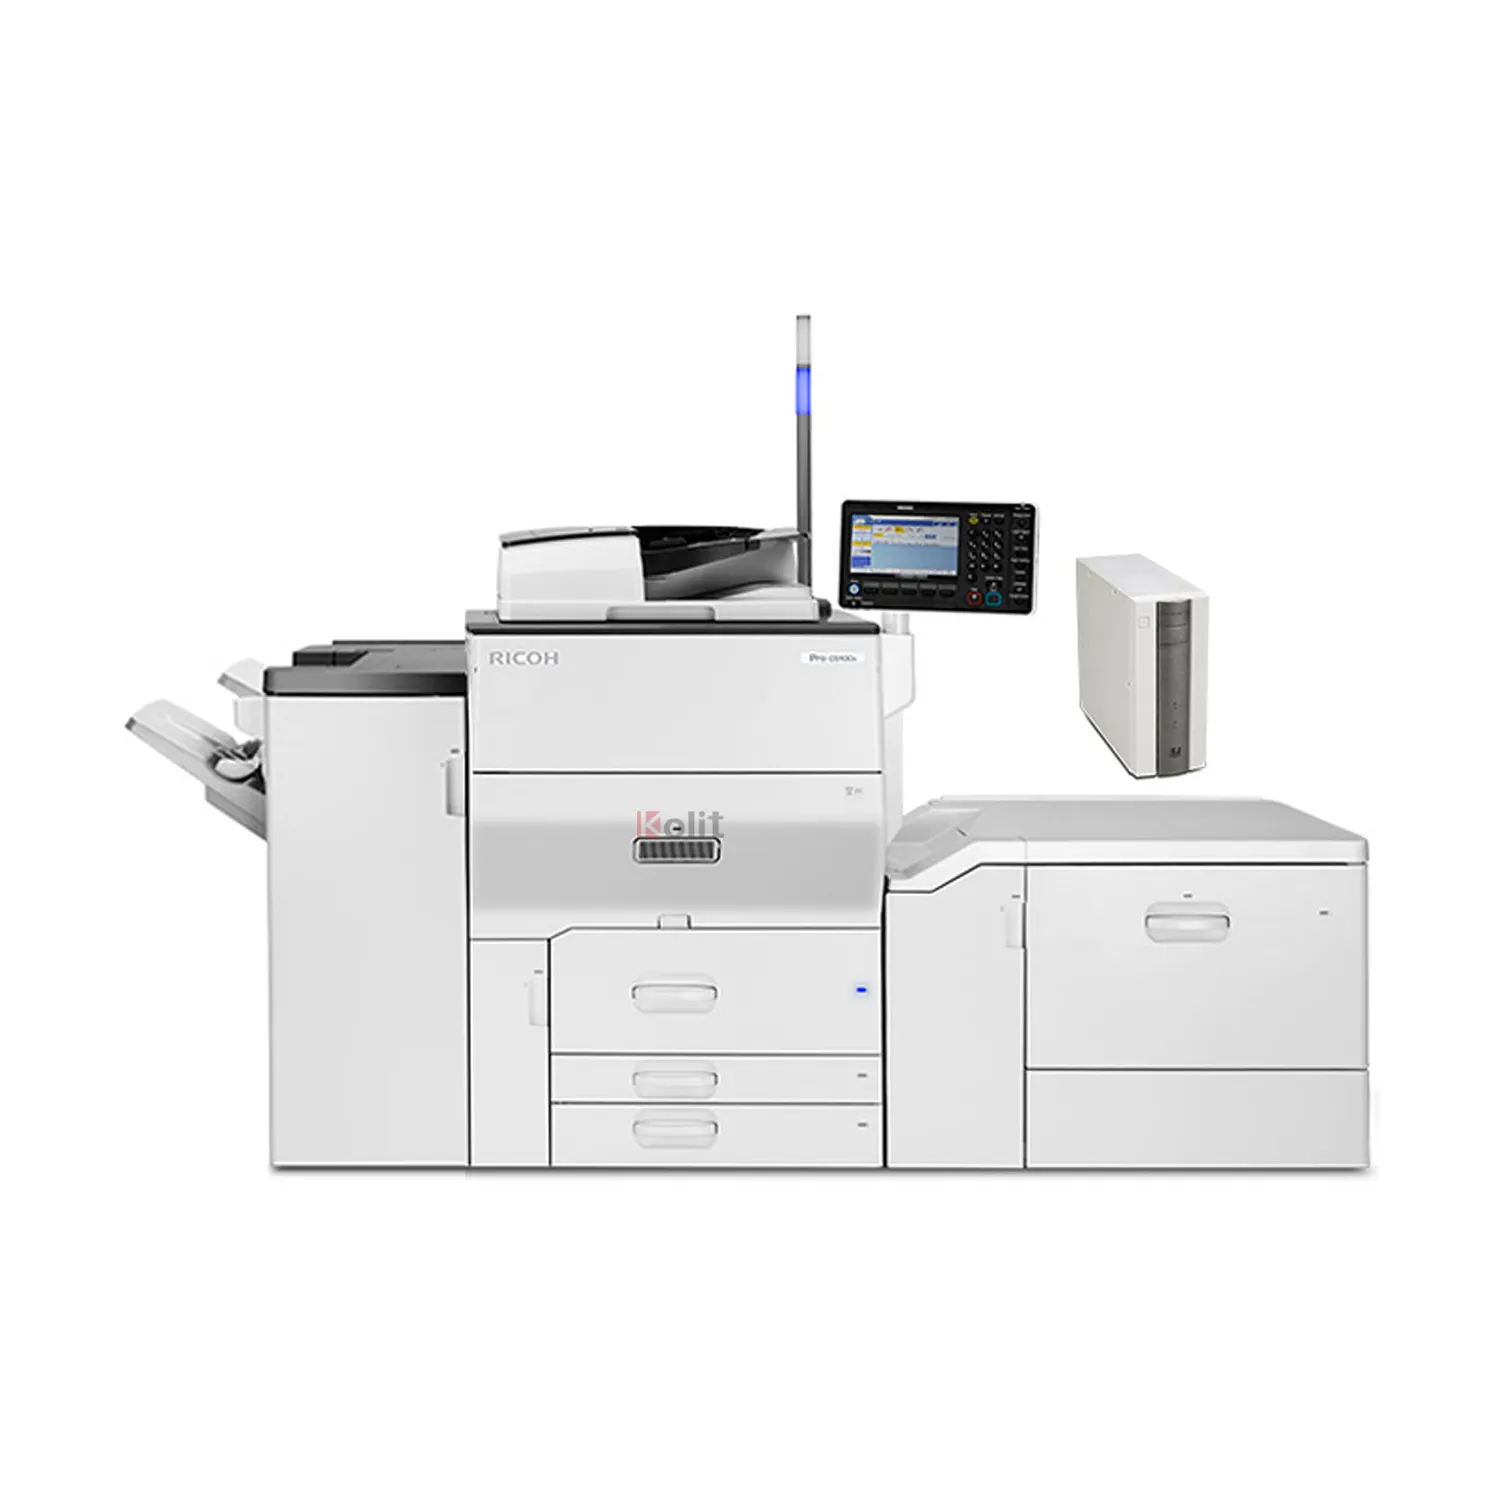 Mesin fotokopi Pro C5100s jejak kecil profesional, mesin fotokopi kecepatan tinggi untuk Ricoh